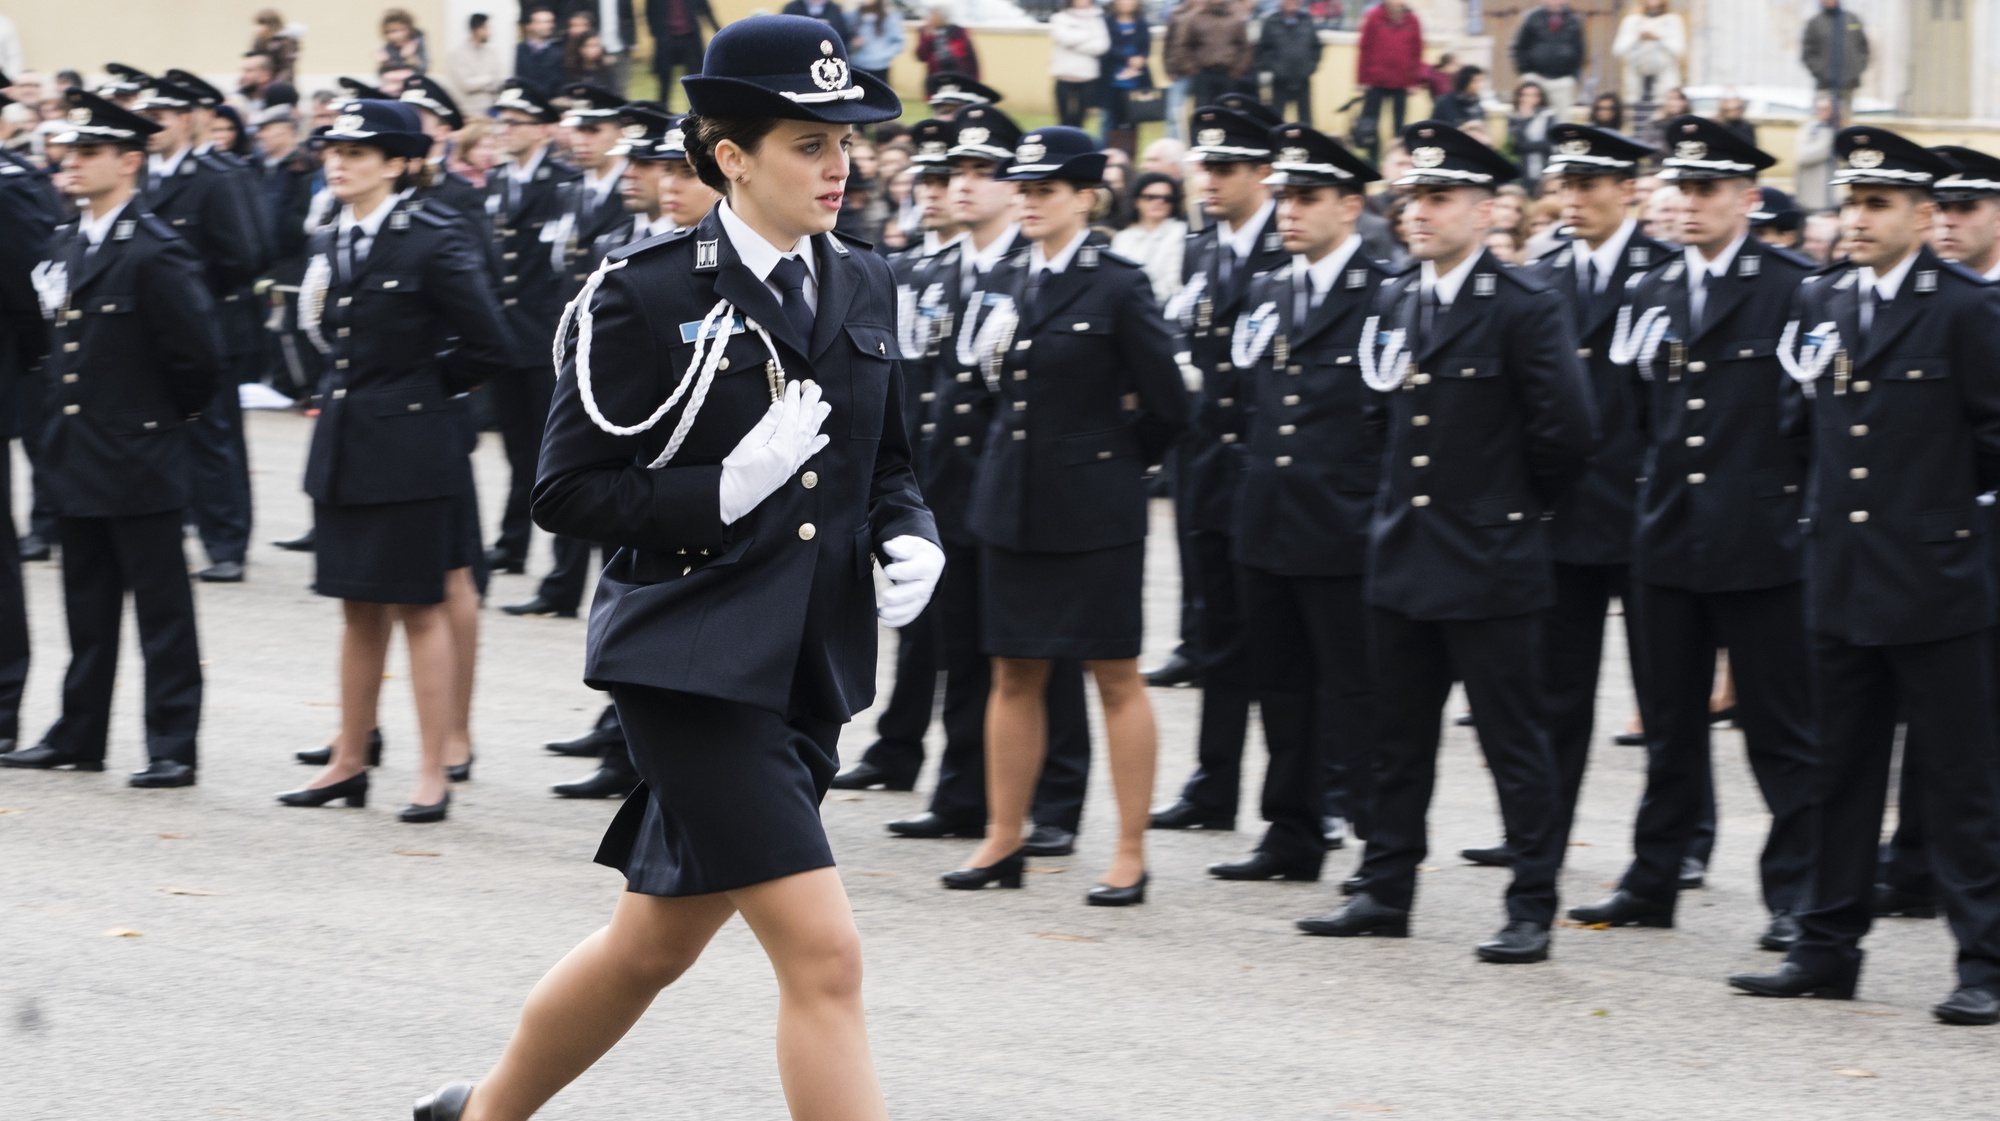 Uma mulher polícia participa na cerimónia de encerramento do 14.º Curso de Formação de Agentes da Polícia de Segurança Pública (PSP) na Escola Prática de Polícia, em Torres Novas, 23 de novembro de 2018. PAULO CUNHA/LUSA